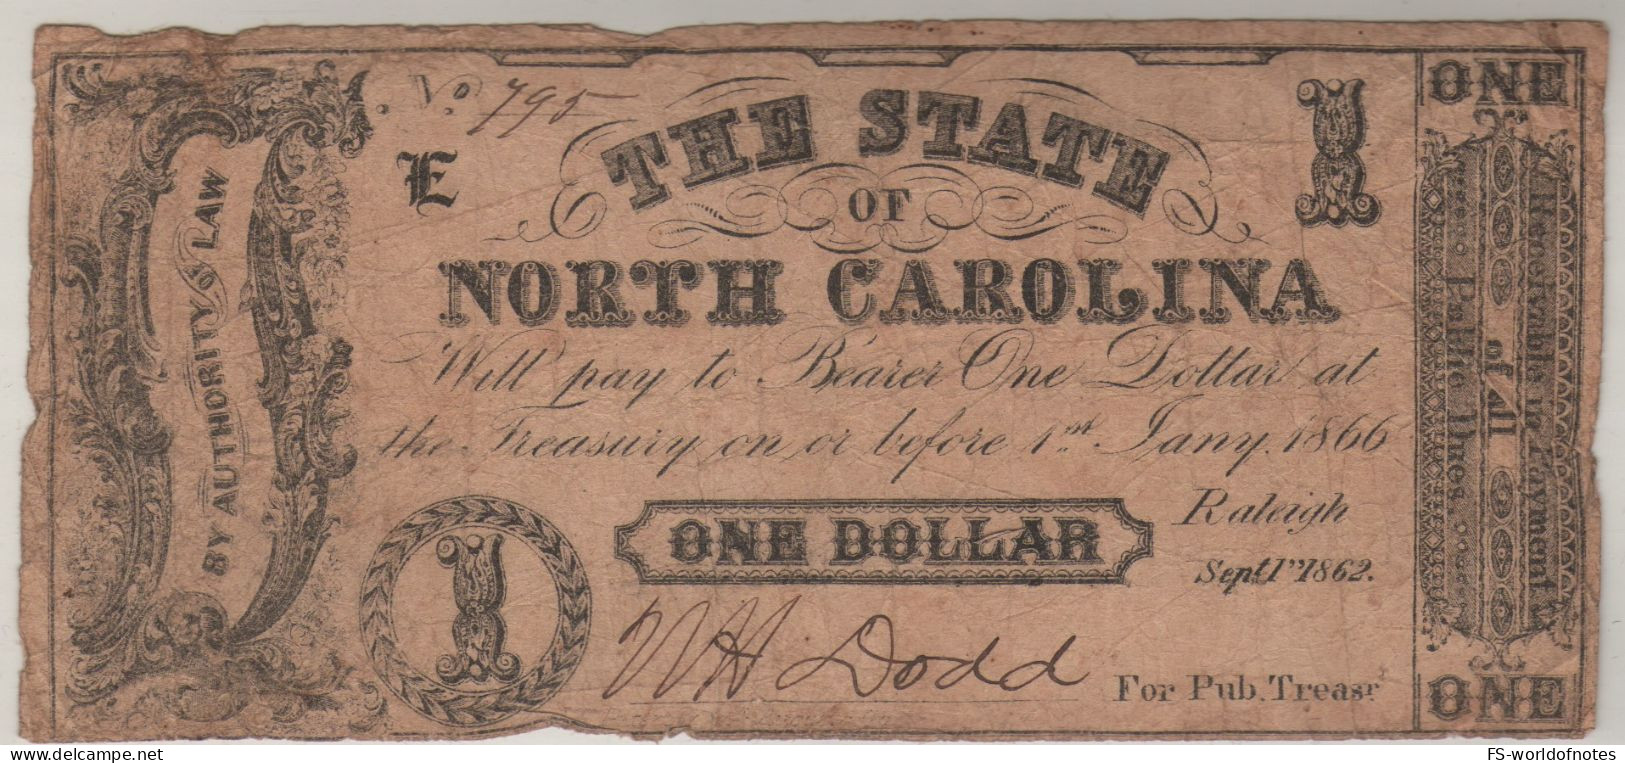 USA   $ 1  "The State Of North Carolina "  Dated 1st Sept. 1862   ( Issued-genuine ! ) - Valuta Della Confederazione (1861-1864)